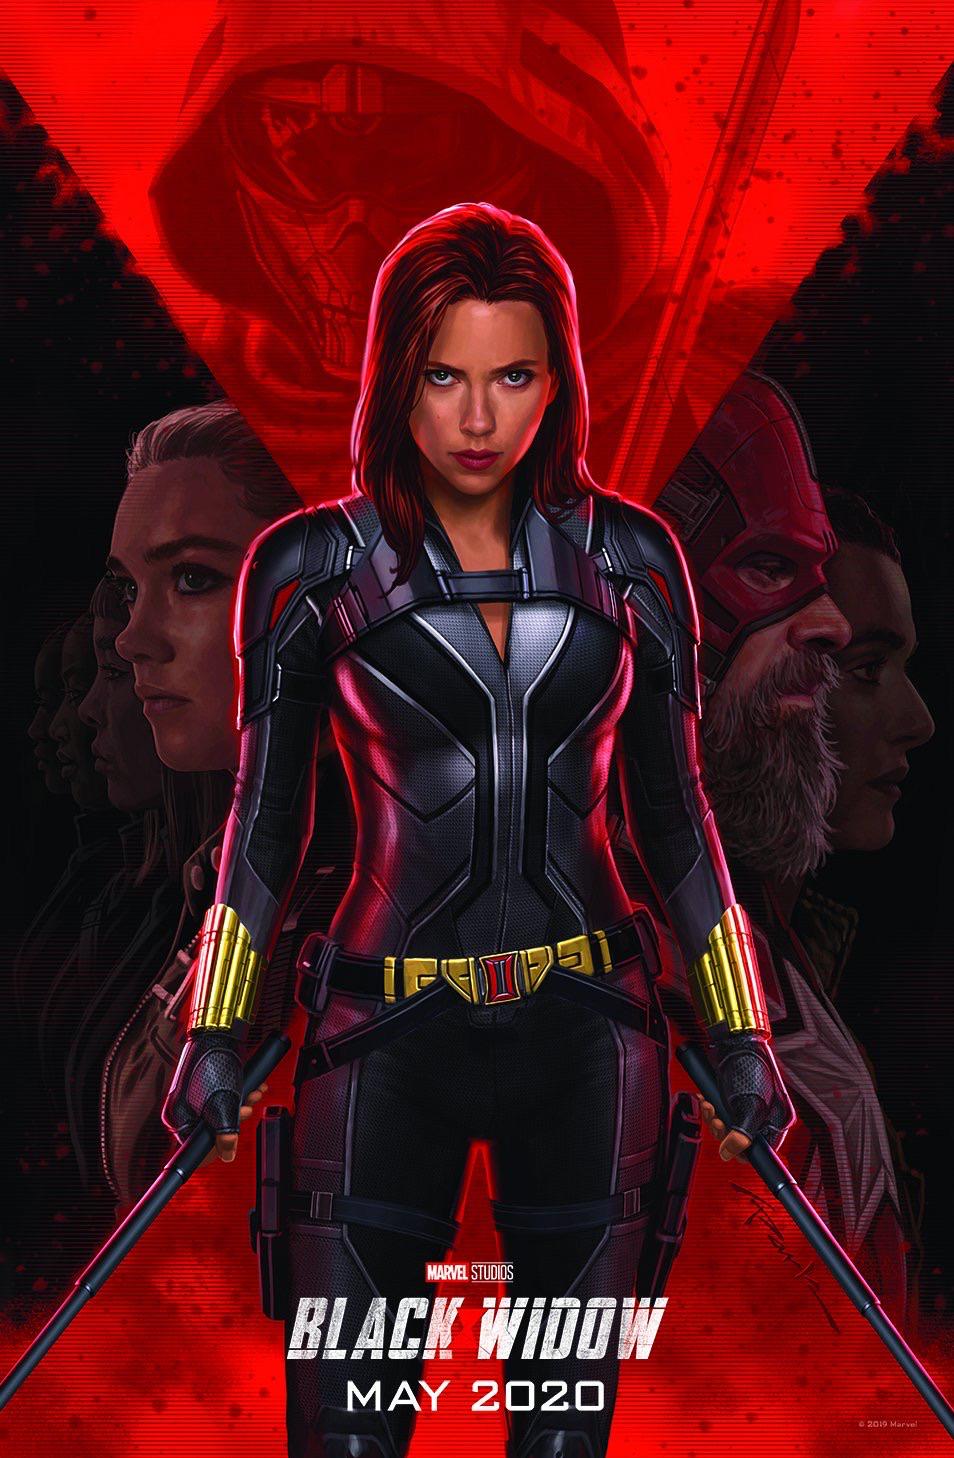 Black Widow D23 Poster Hi-Res